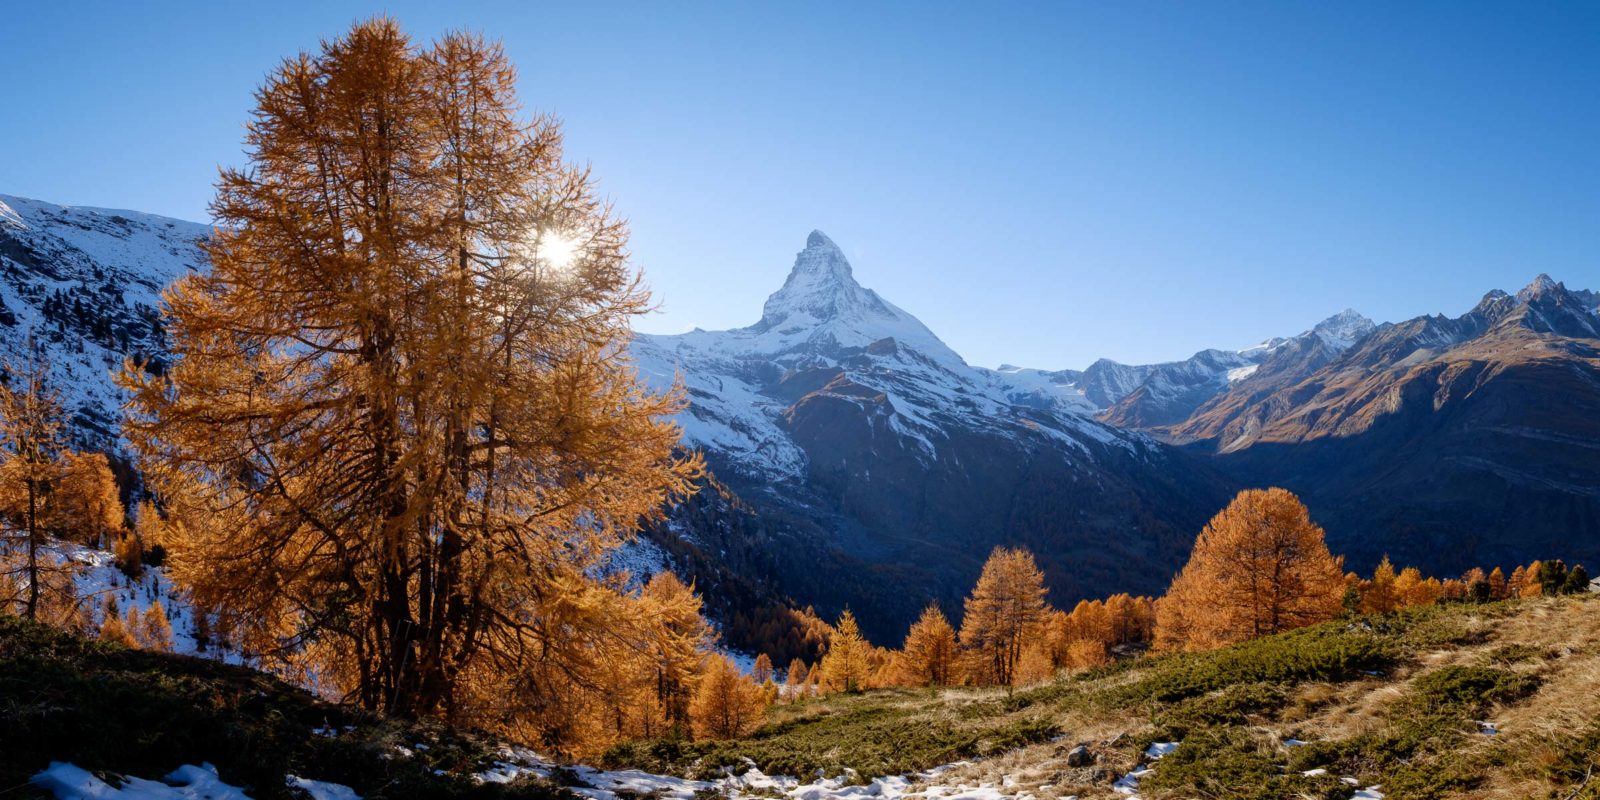 Matterhorn from Riffelalp in autumn